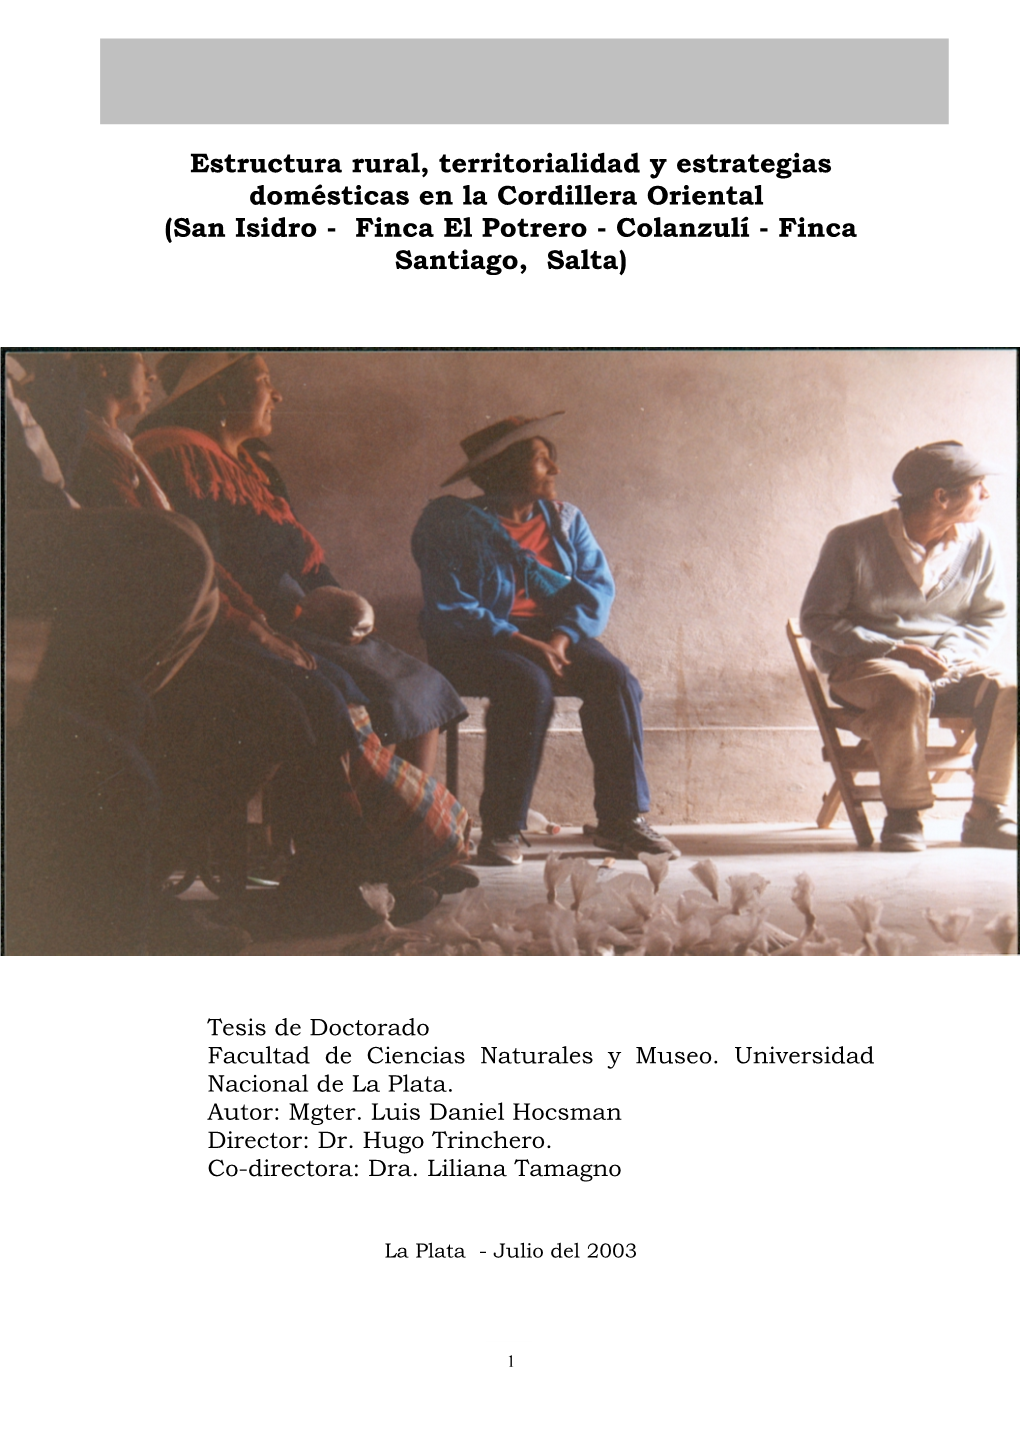 Estructura Rural, Territorialidad Y Estrategias Domésticas En La Cordillera Oriental (San Isidro - Finca El Potrero - Colanzulí - Finca Santiago, Salta)